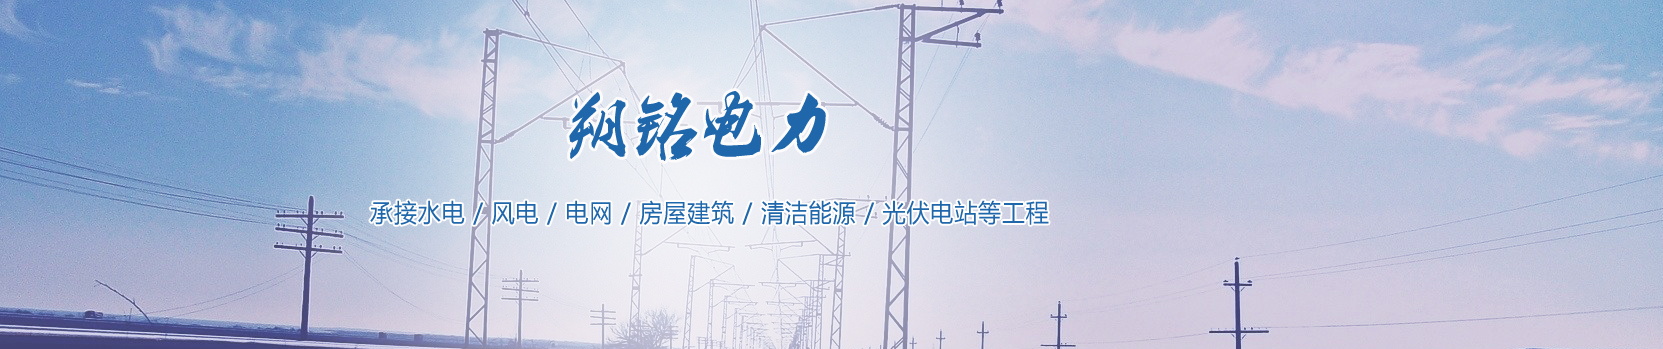 云南昆明35kv变电站安装箱式变电站在城乡电网建设改造中得到广泛应用